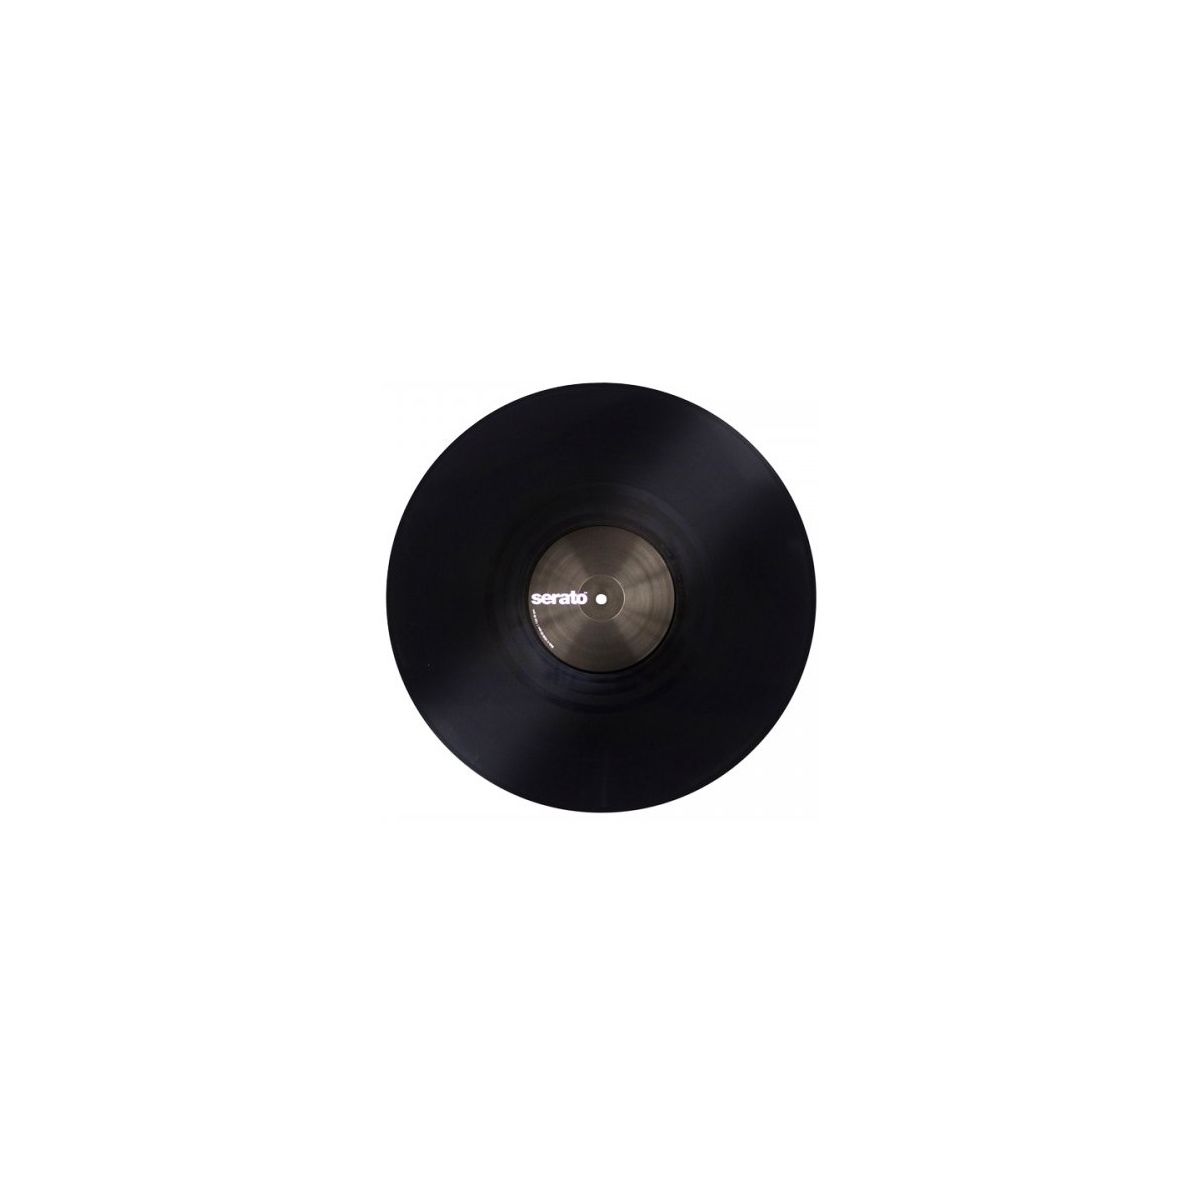 Vinyles time codés - Serato - Paire Vinyl Black 12''